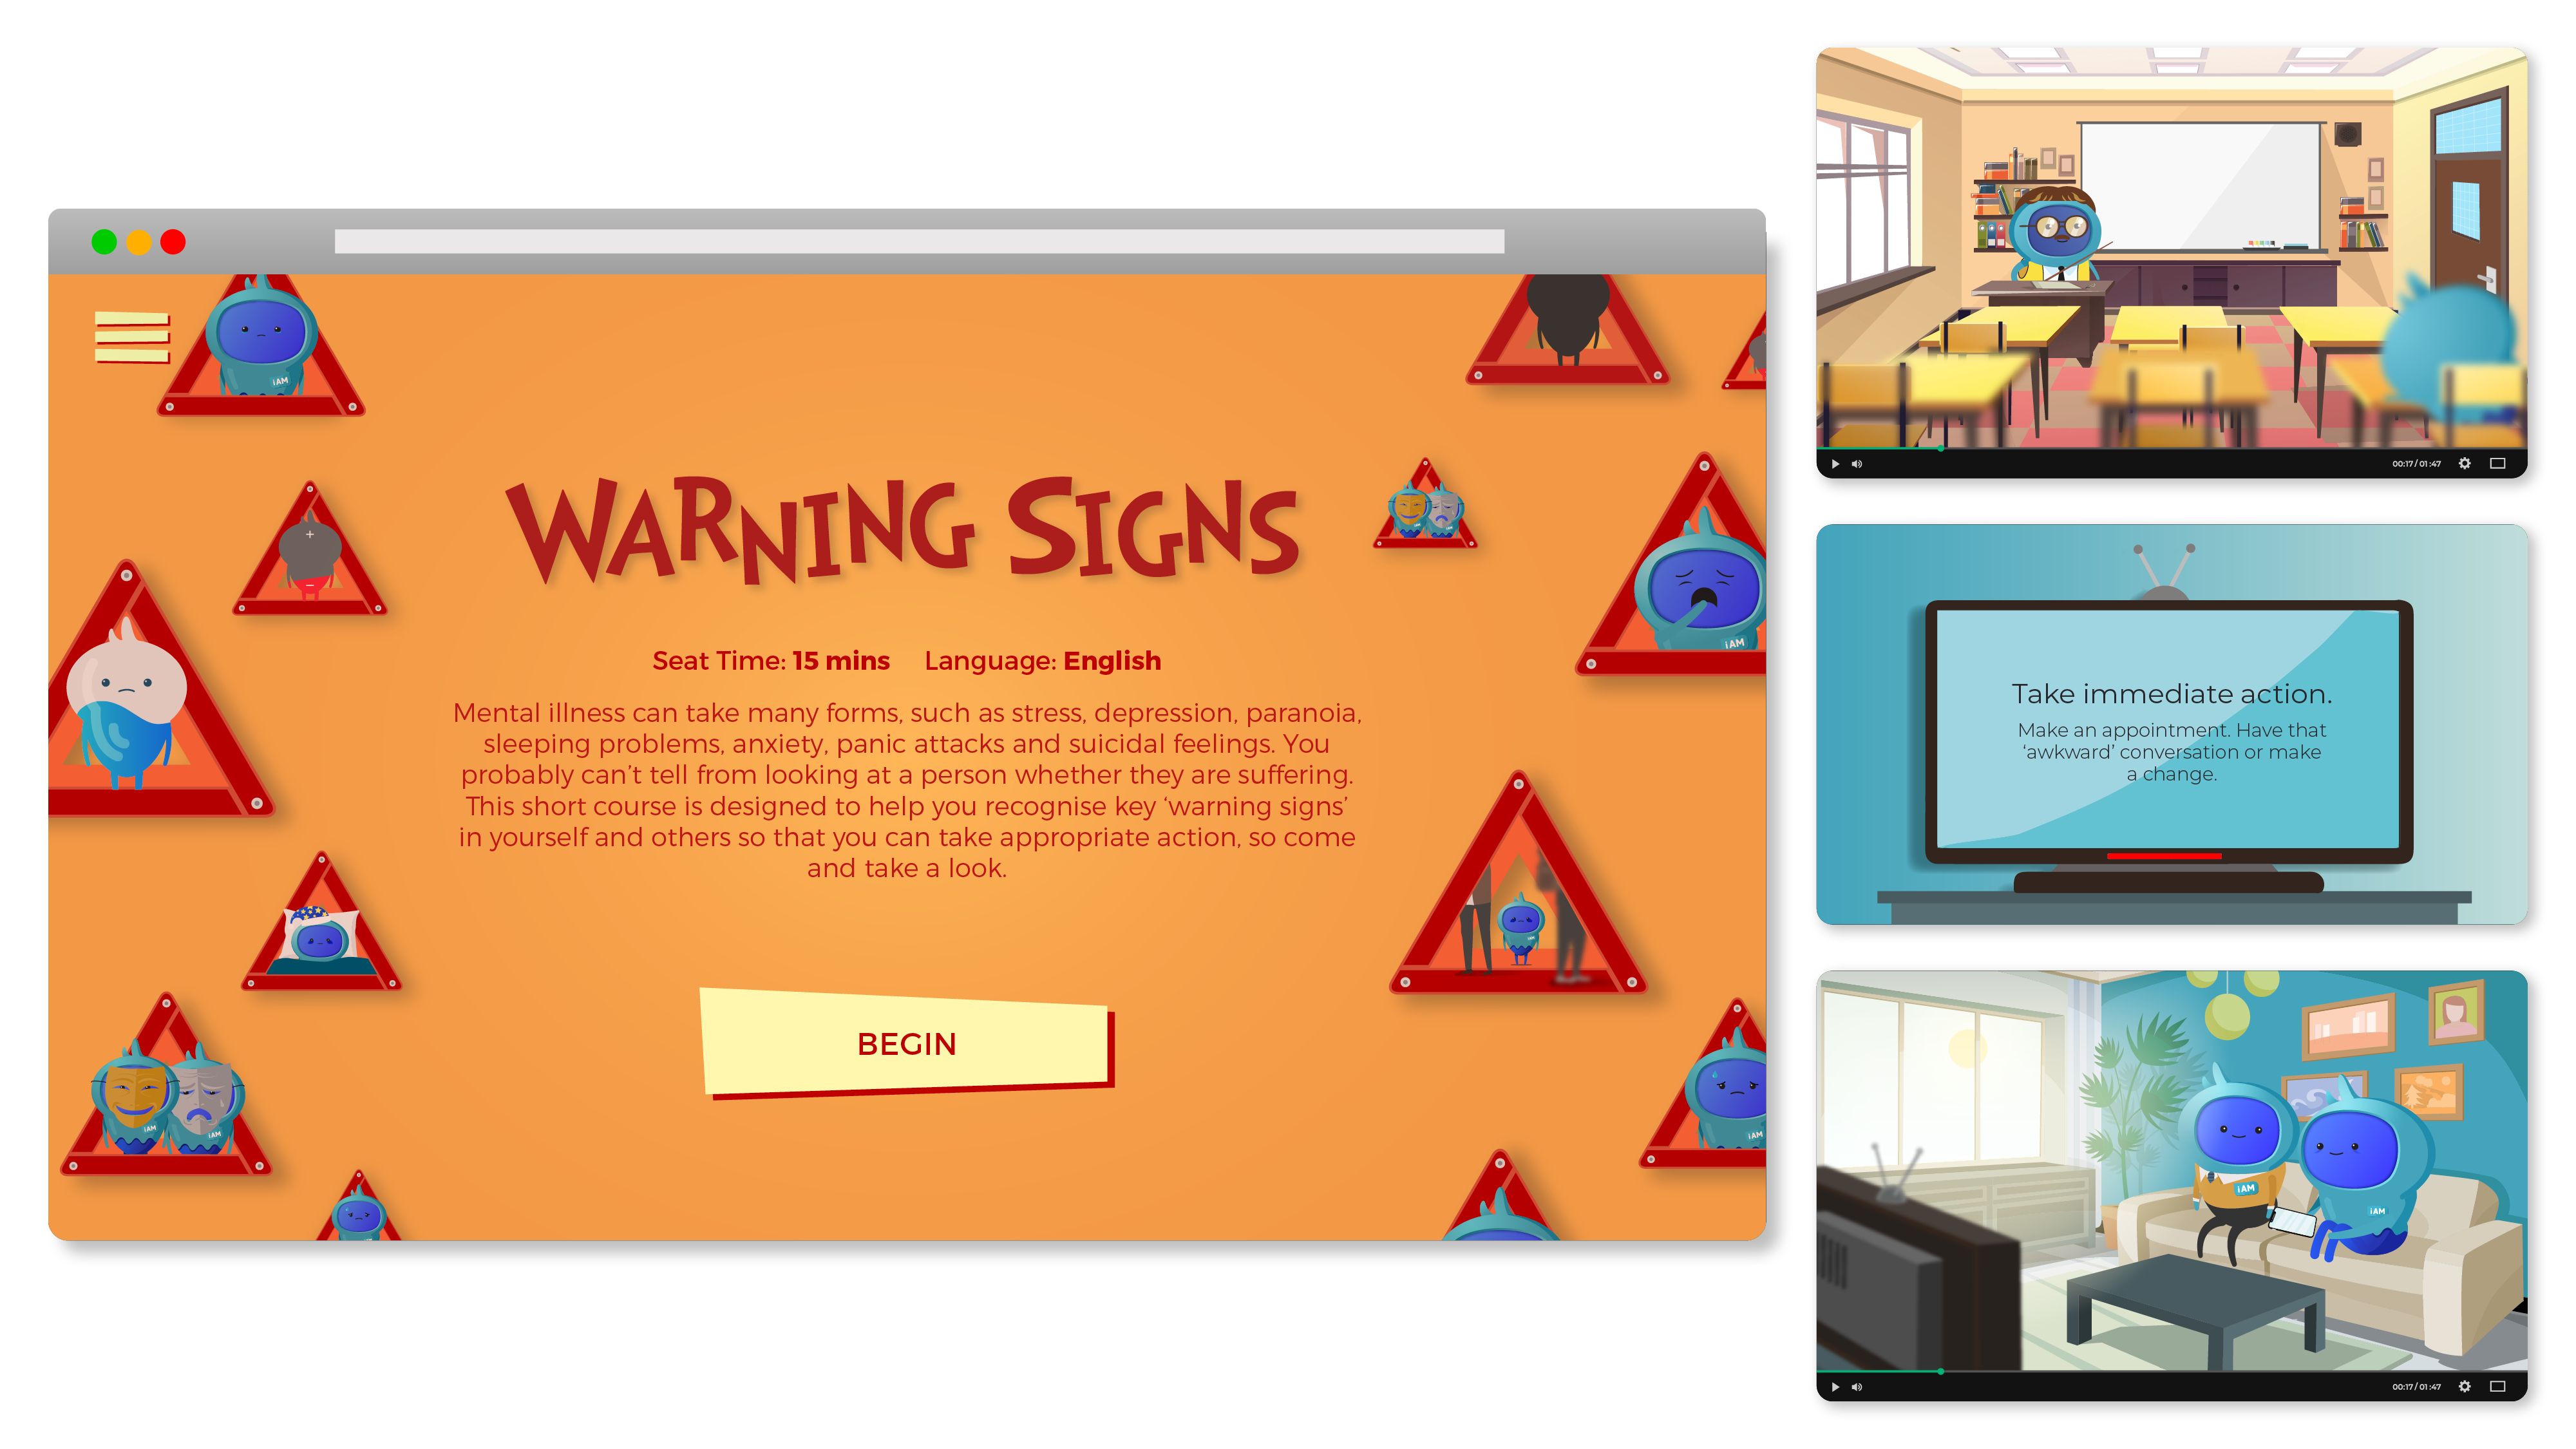 iAM Warning Signs Landing Page Image